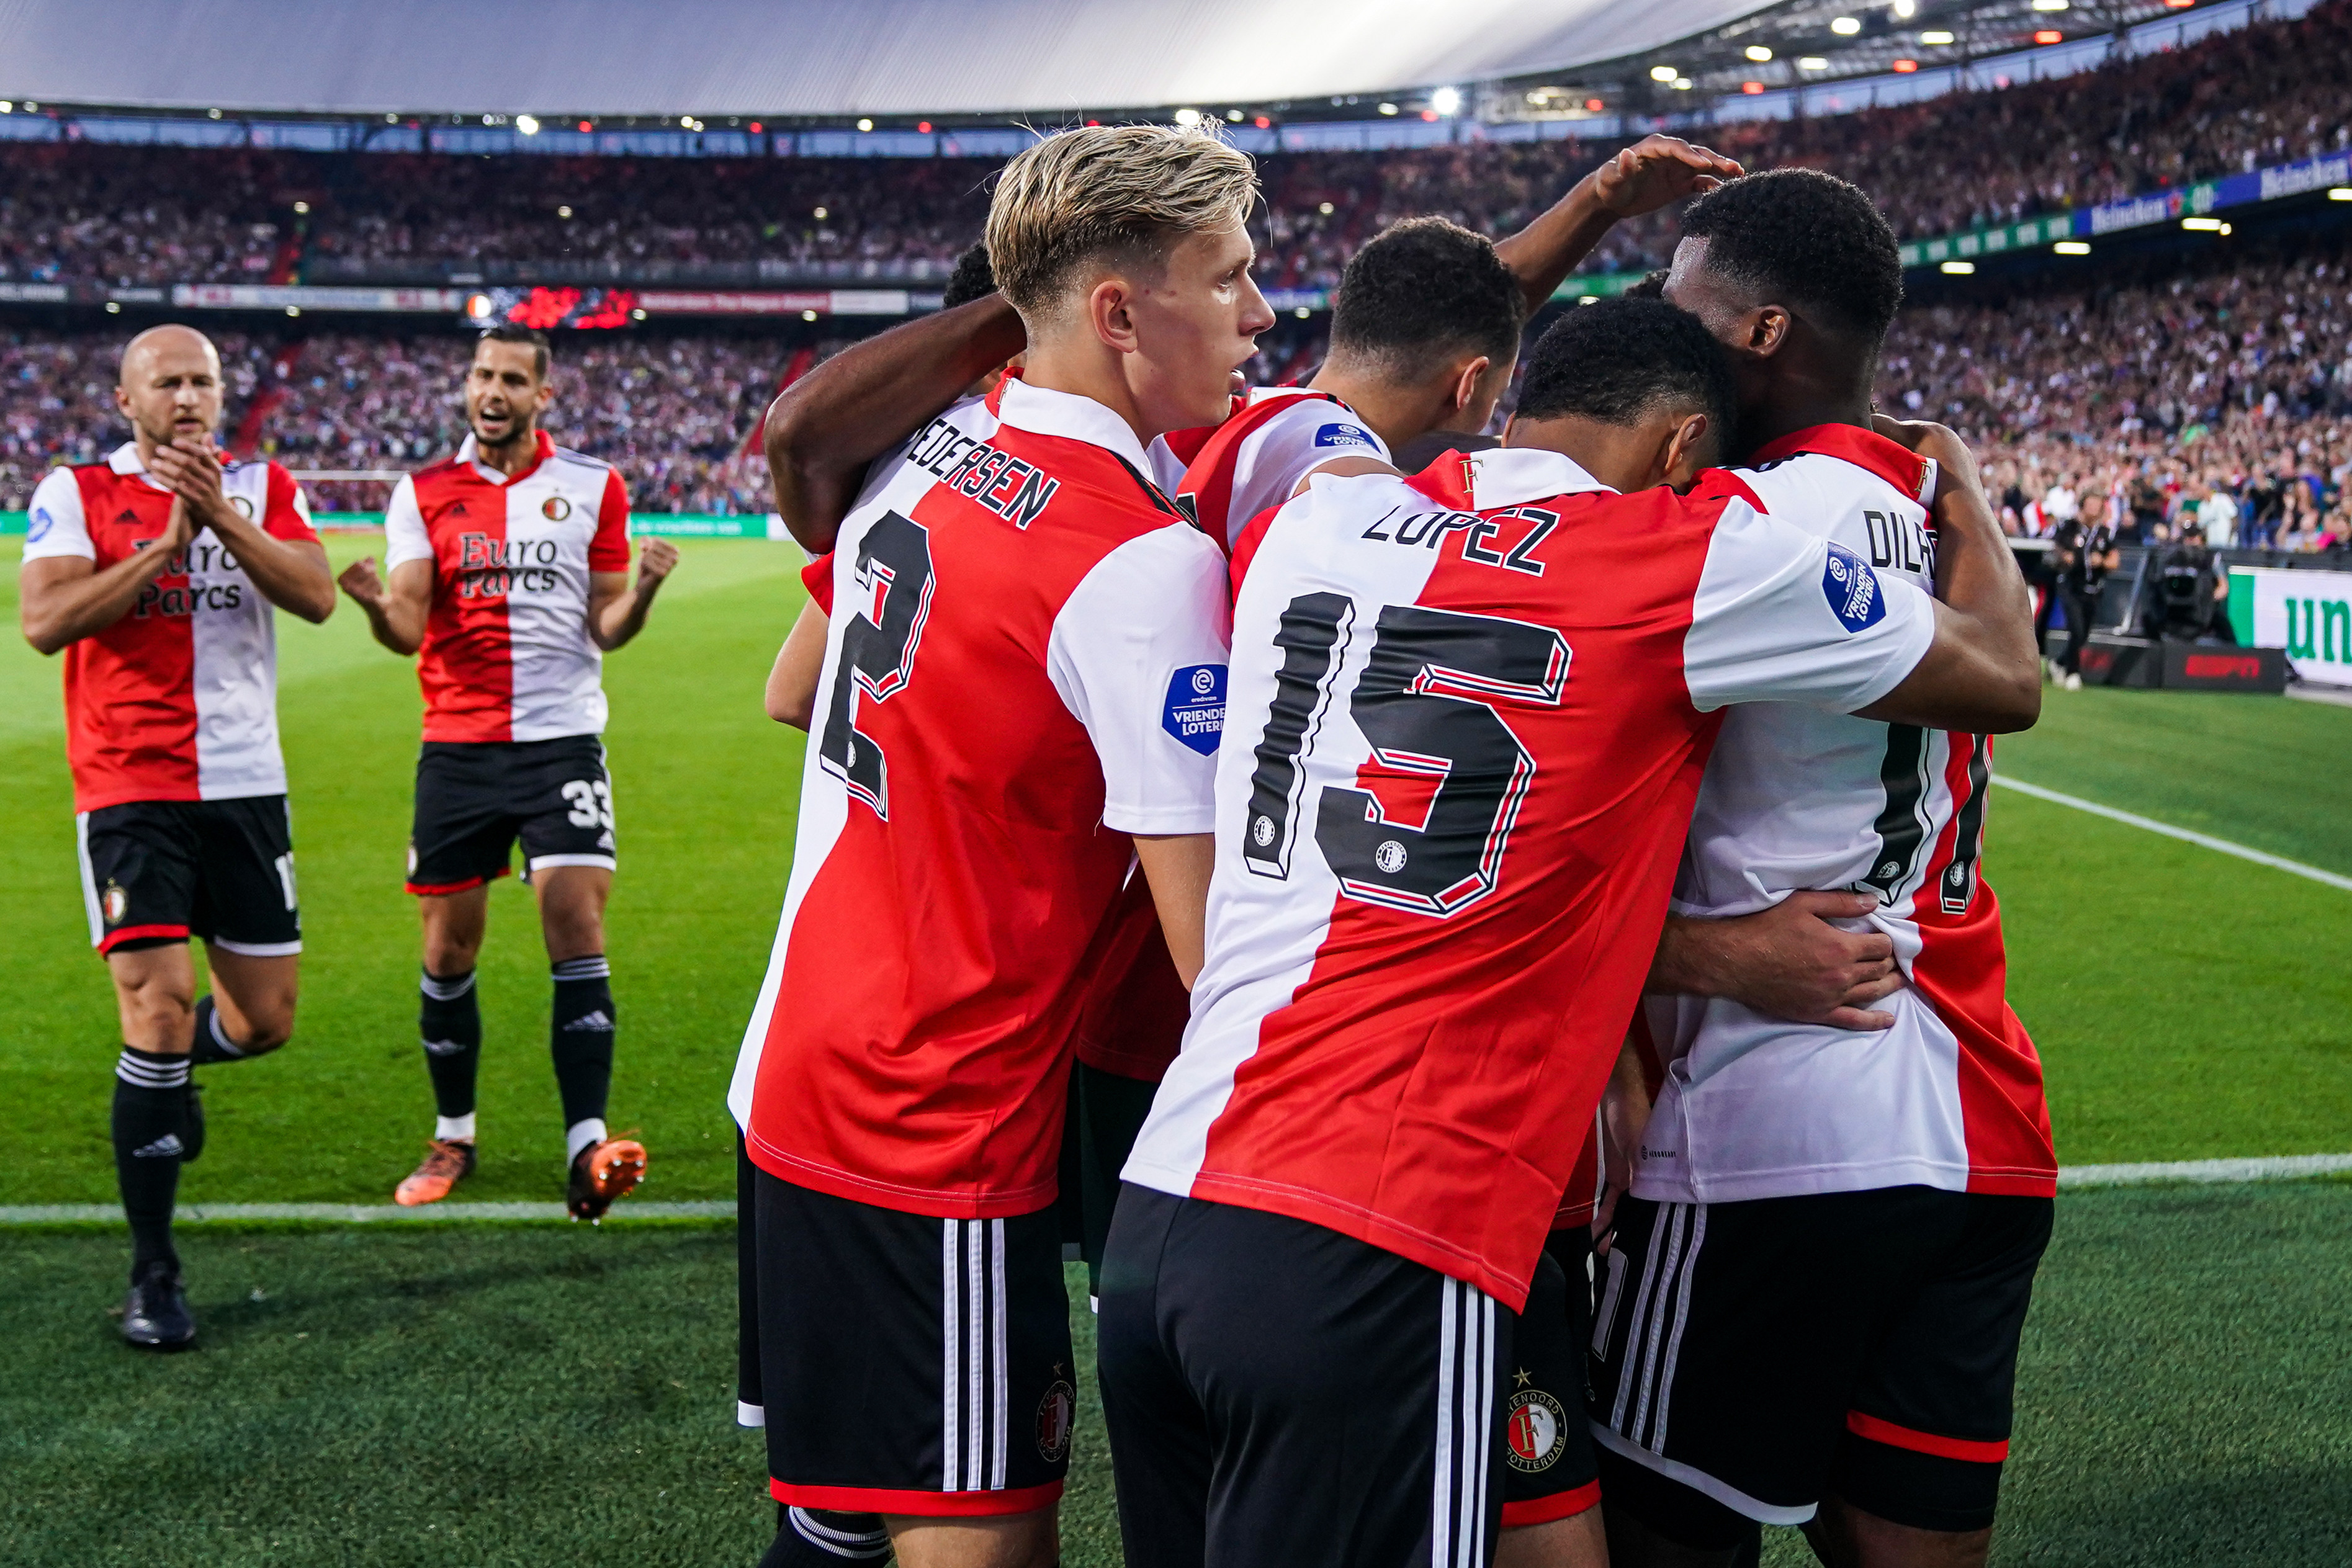 Feyenoord volgens de statistieken huizenhoog titelfavoriet